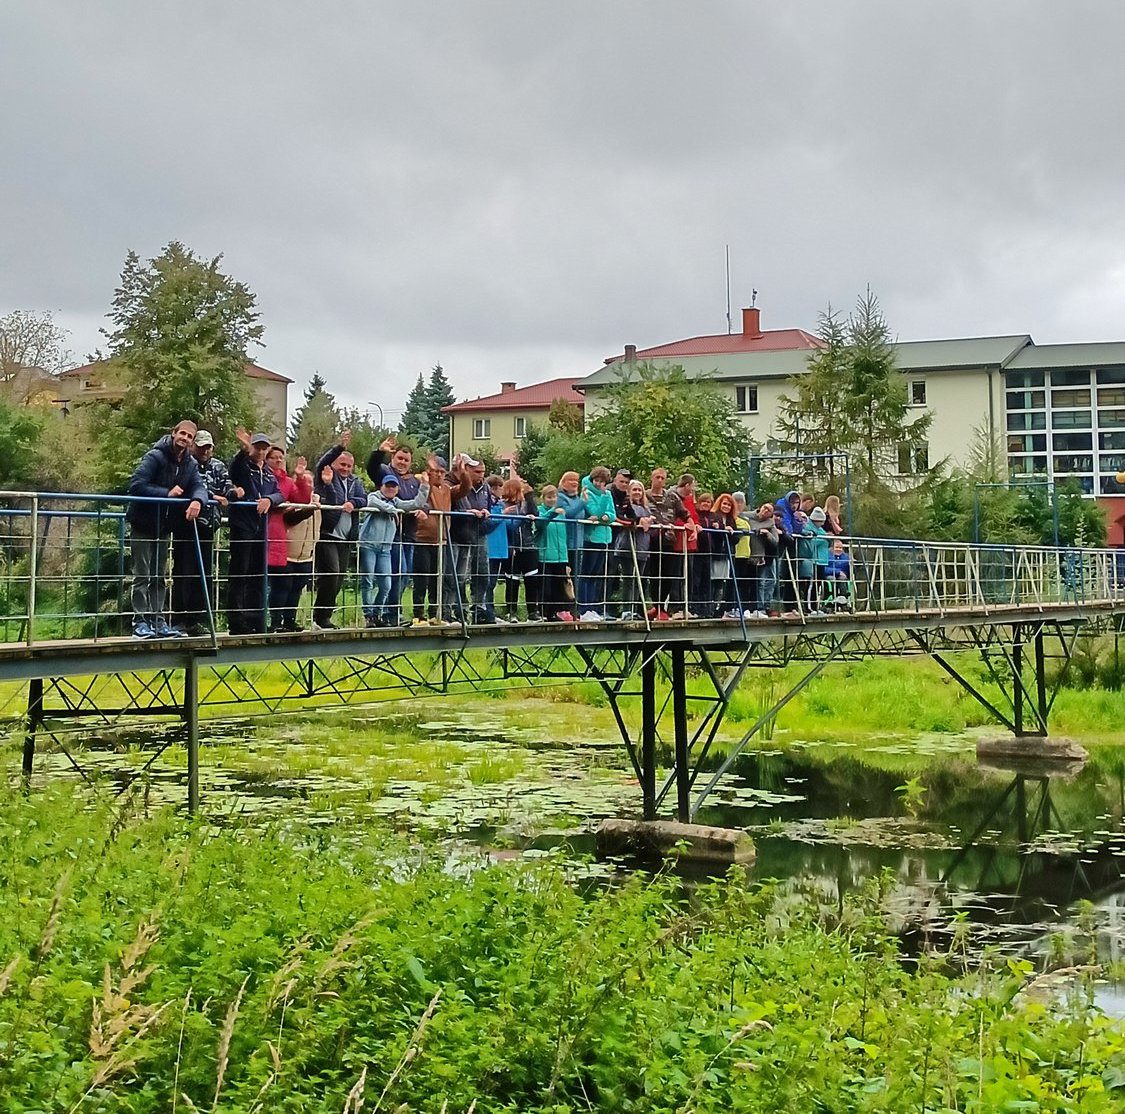 Grupa uczestników zajęć wraz z opiekunami stojąca na kładce dla pieszych nad rzeczką Kałamanka. Na lustrze wody widoczna roślinność wodna. W tle widoczny budynek WTZ.